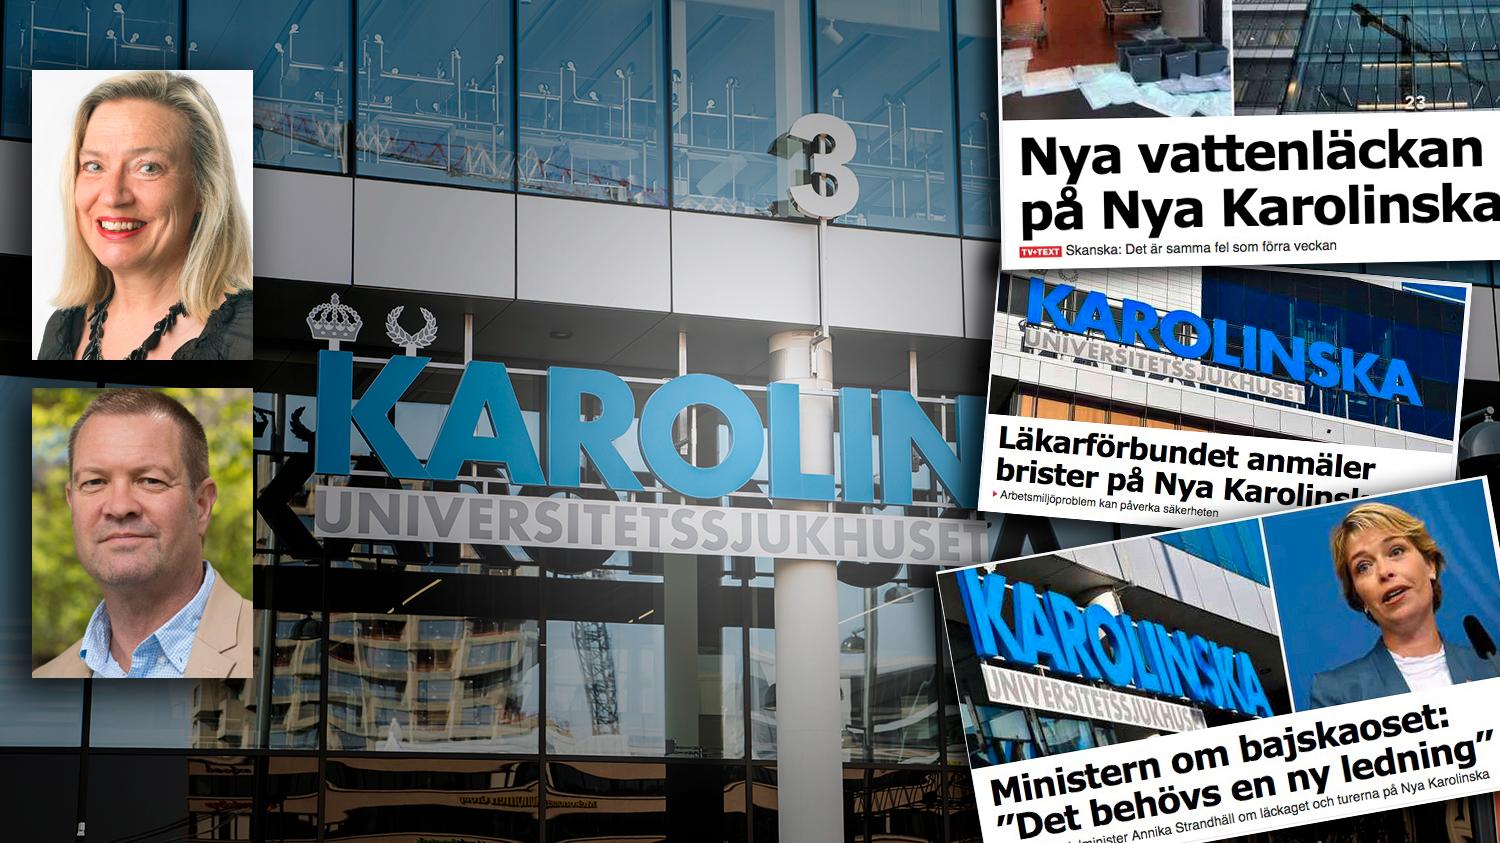 Vi får inte glömma att NKS-affären är en av svensk offentlighets största skandaler, och att borgerligheten i princip sms-lånade för att betala för det, skriver debattörerna.